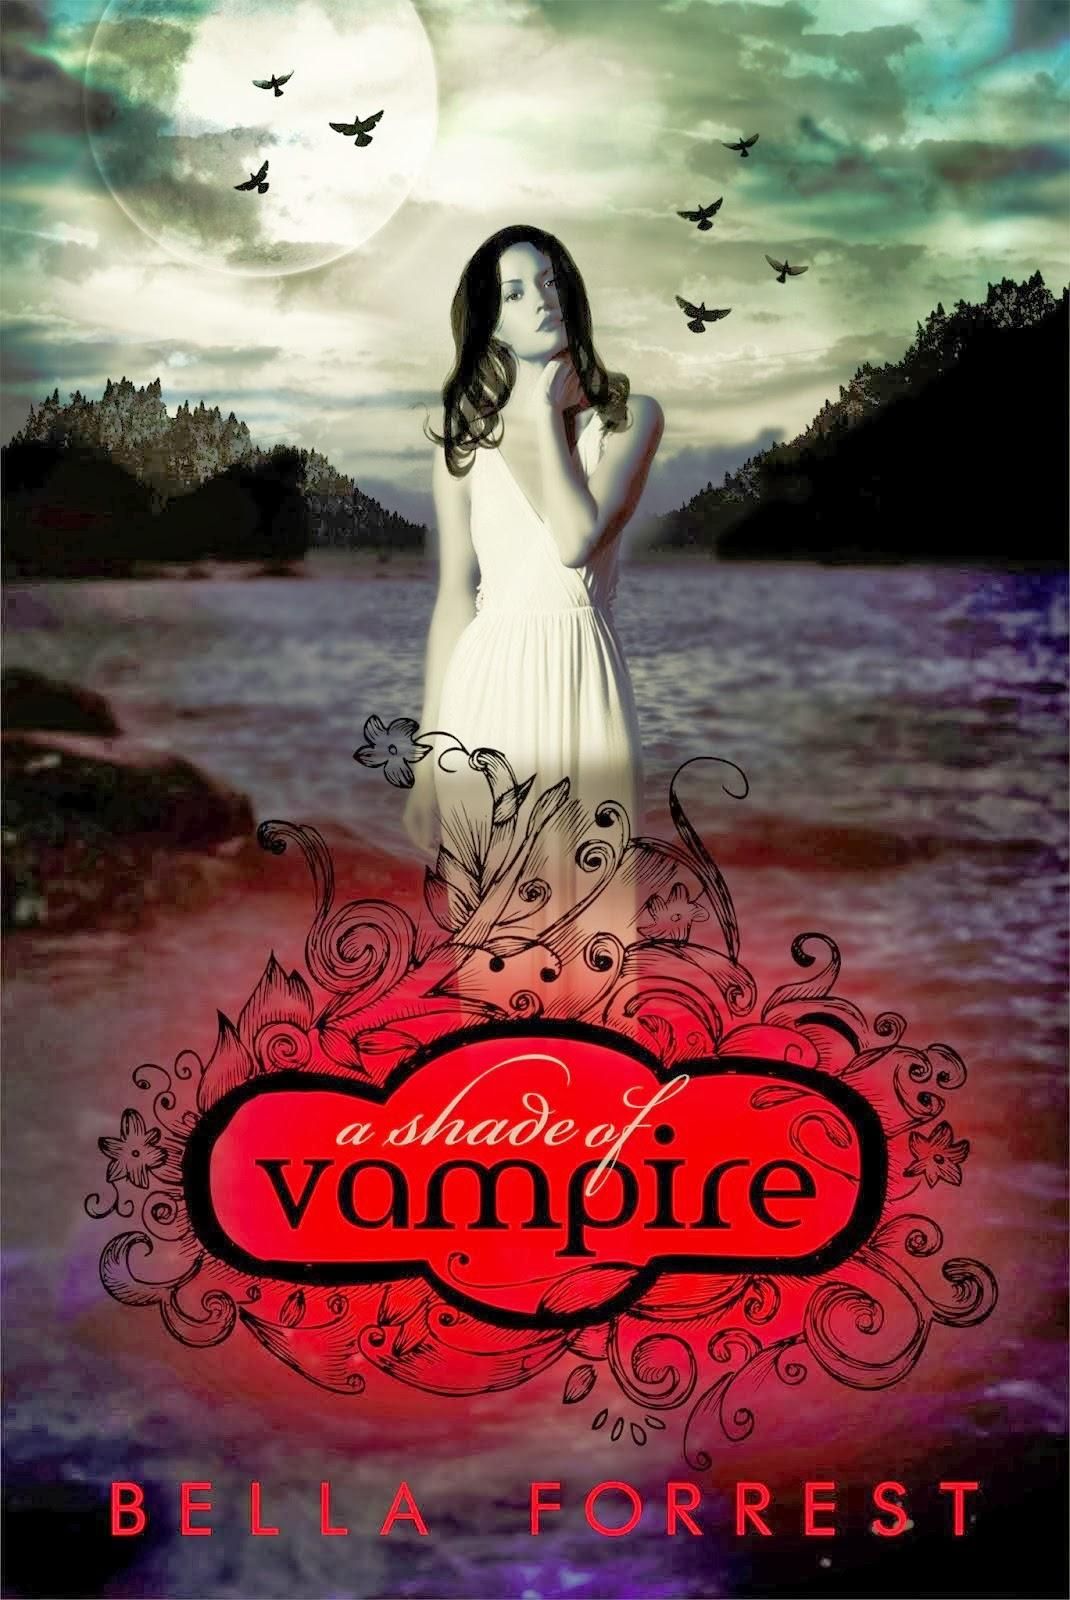 A shade of vampire series